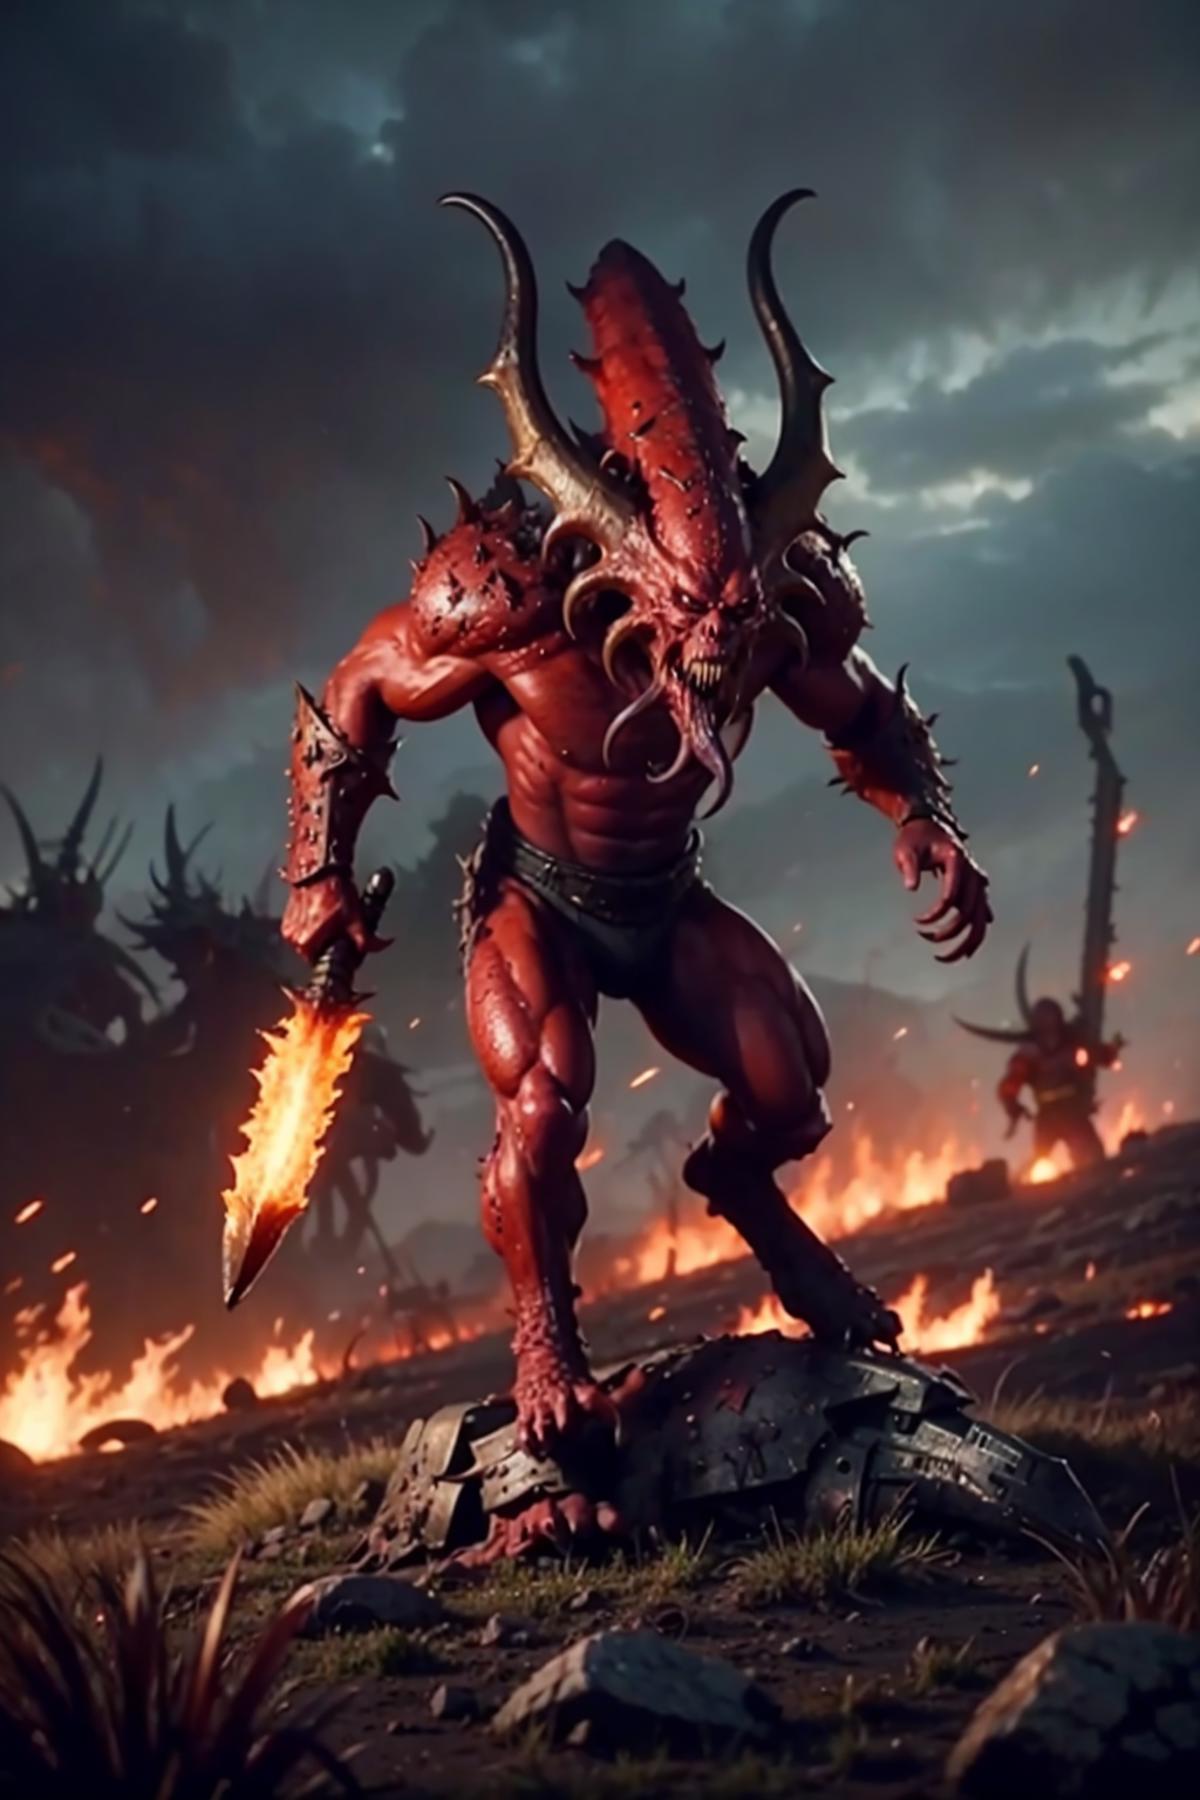 Bloodletter: Warhammer Fantasy image by Flintmongoose